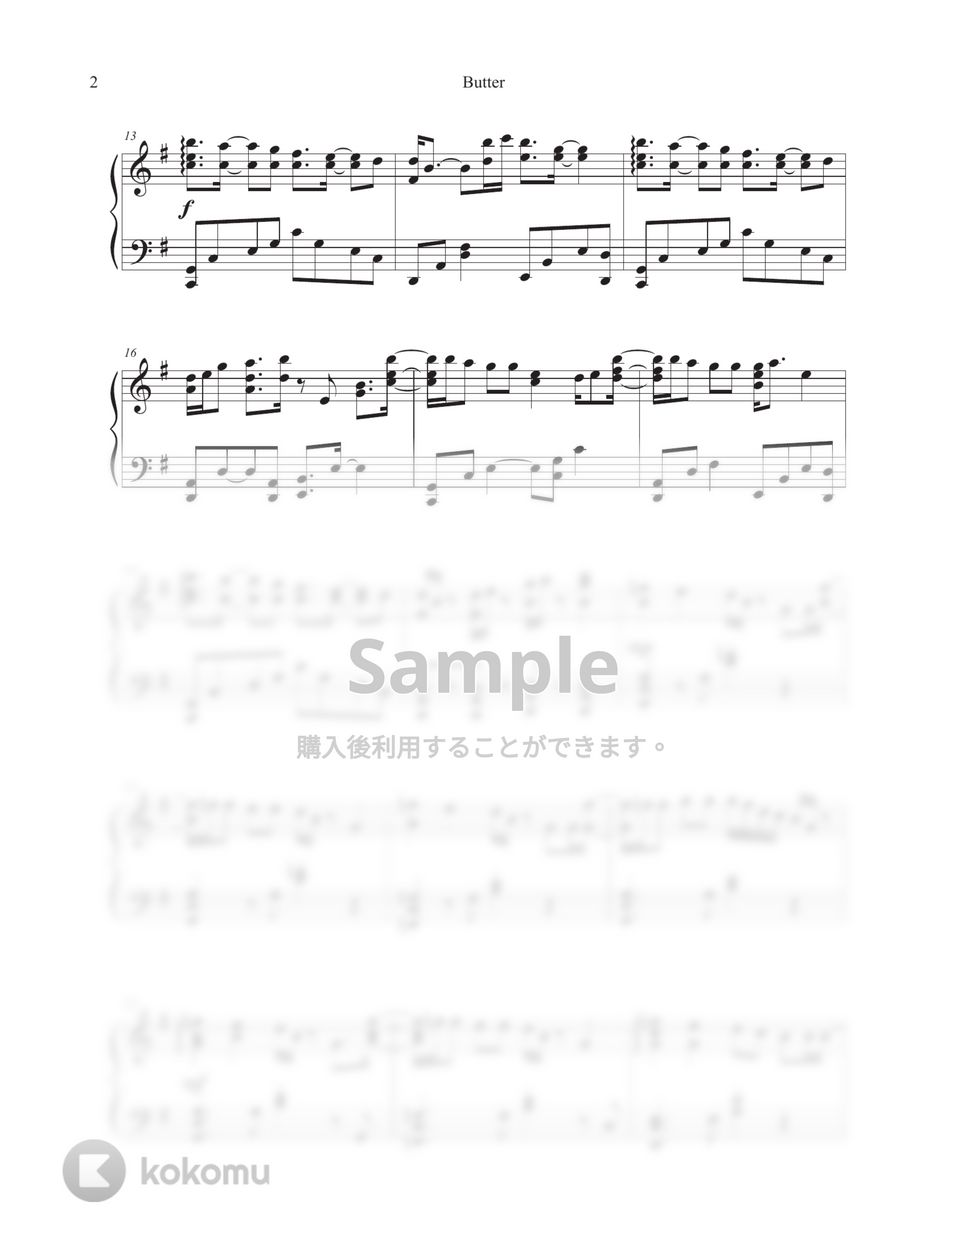 防弾少年団(BTS) - Butter (G Major Transposed Key) by Tully Piano